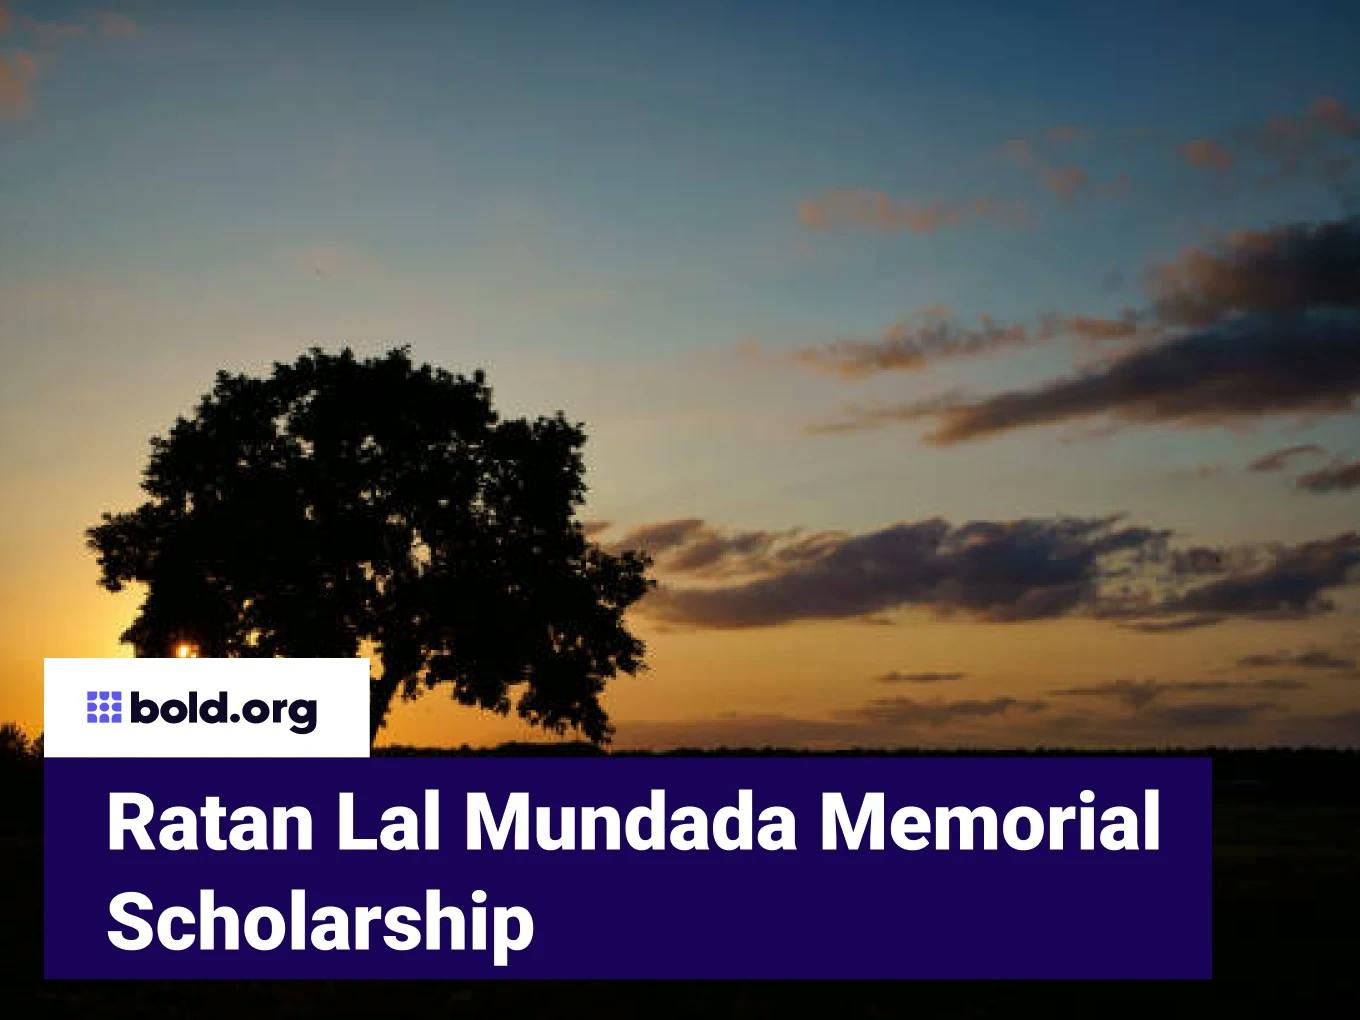 Ratan Lal Mundada Memorial Scholarship